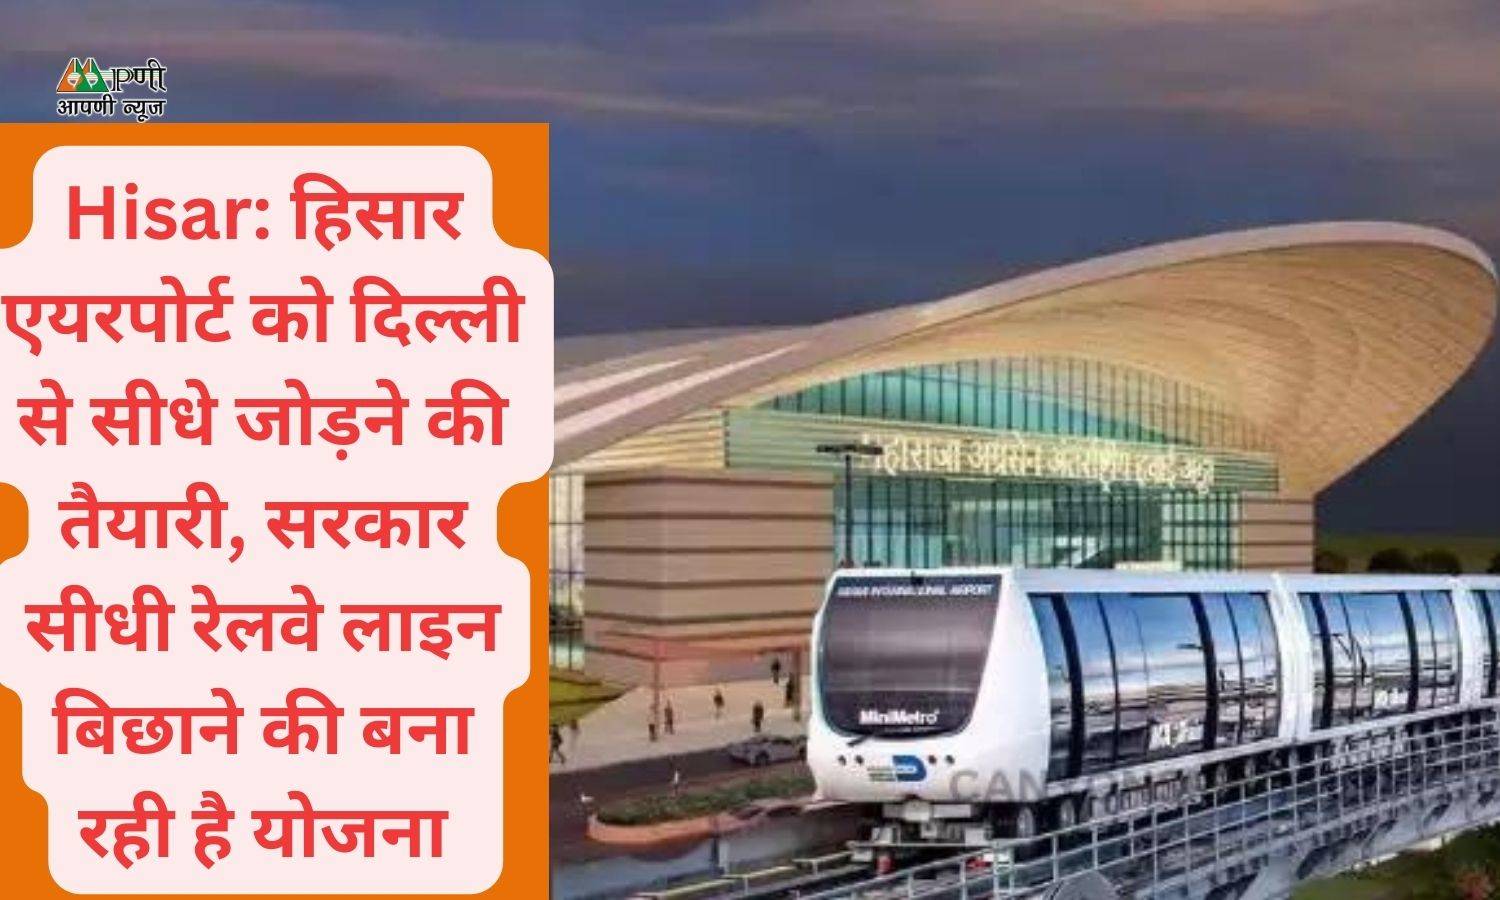 Hisar: हिसार एयरपोर्ट को दिल्ली से सीधे जोड़ने की तैयारी, सरकार सीधी रेलवे लाइन बिछाने की बना रही है योजना